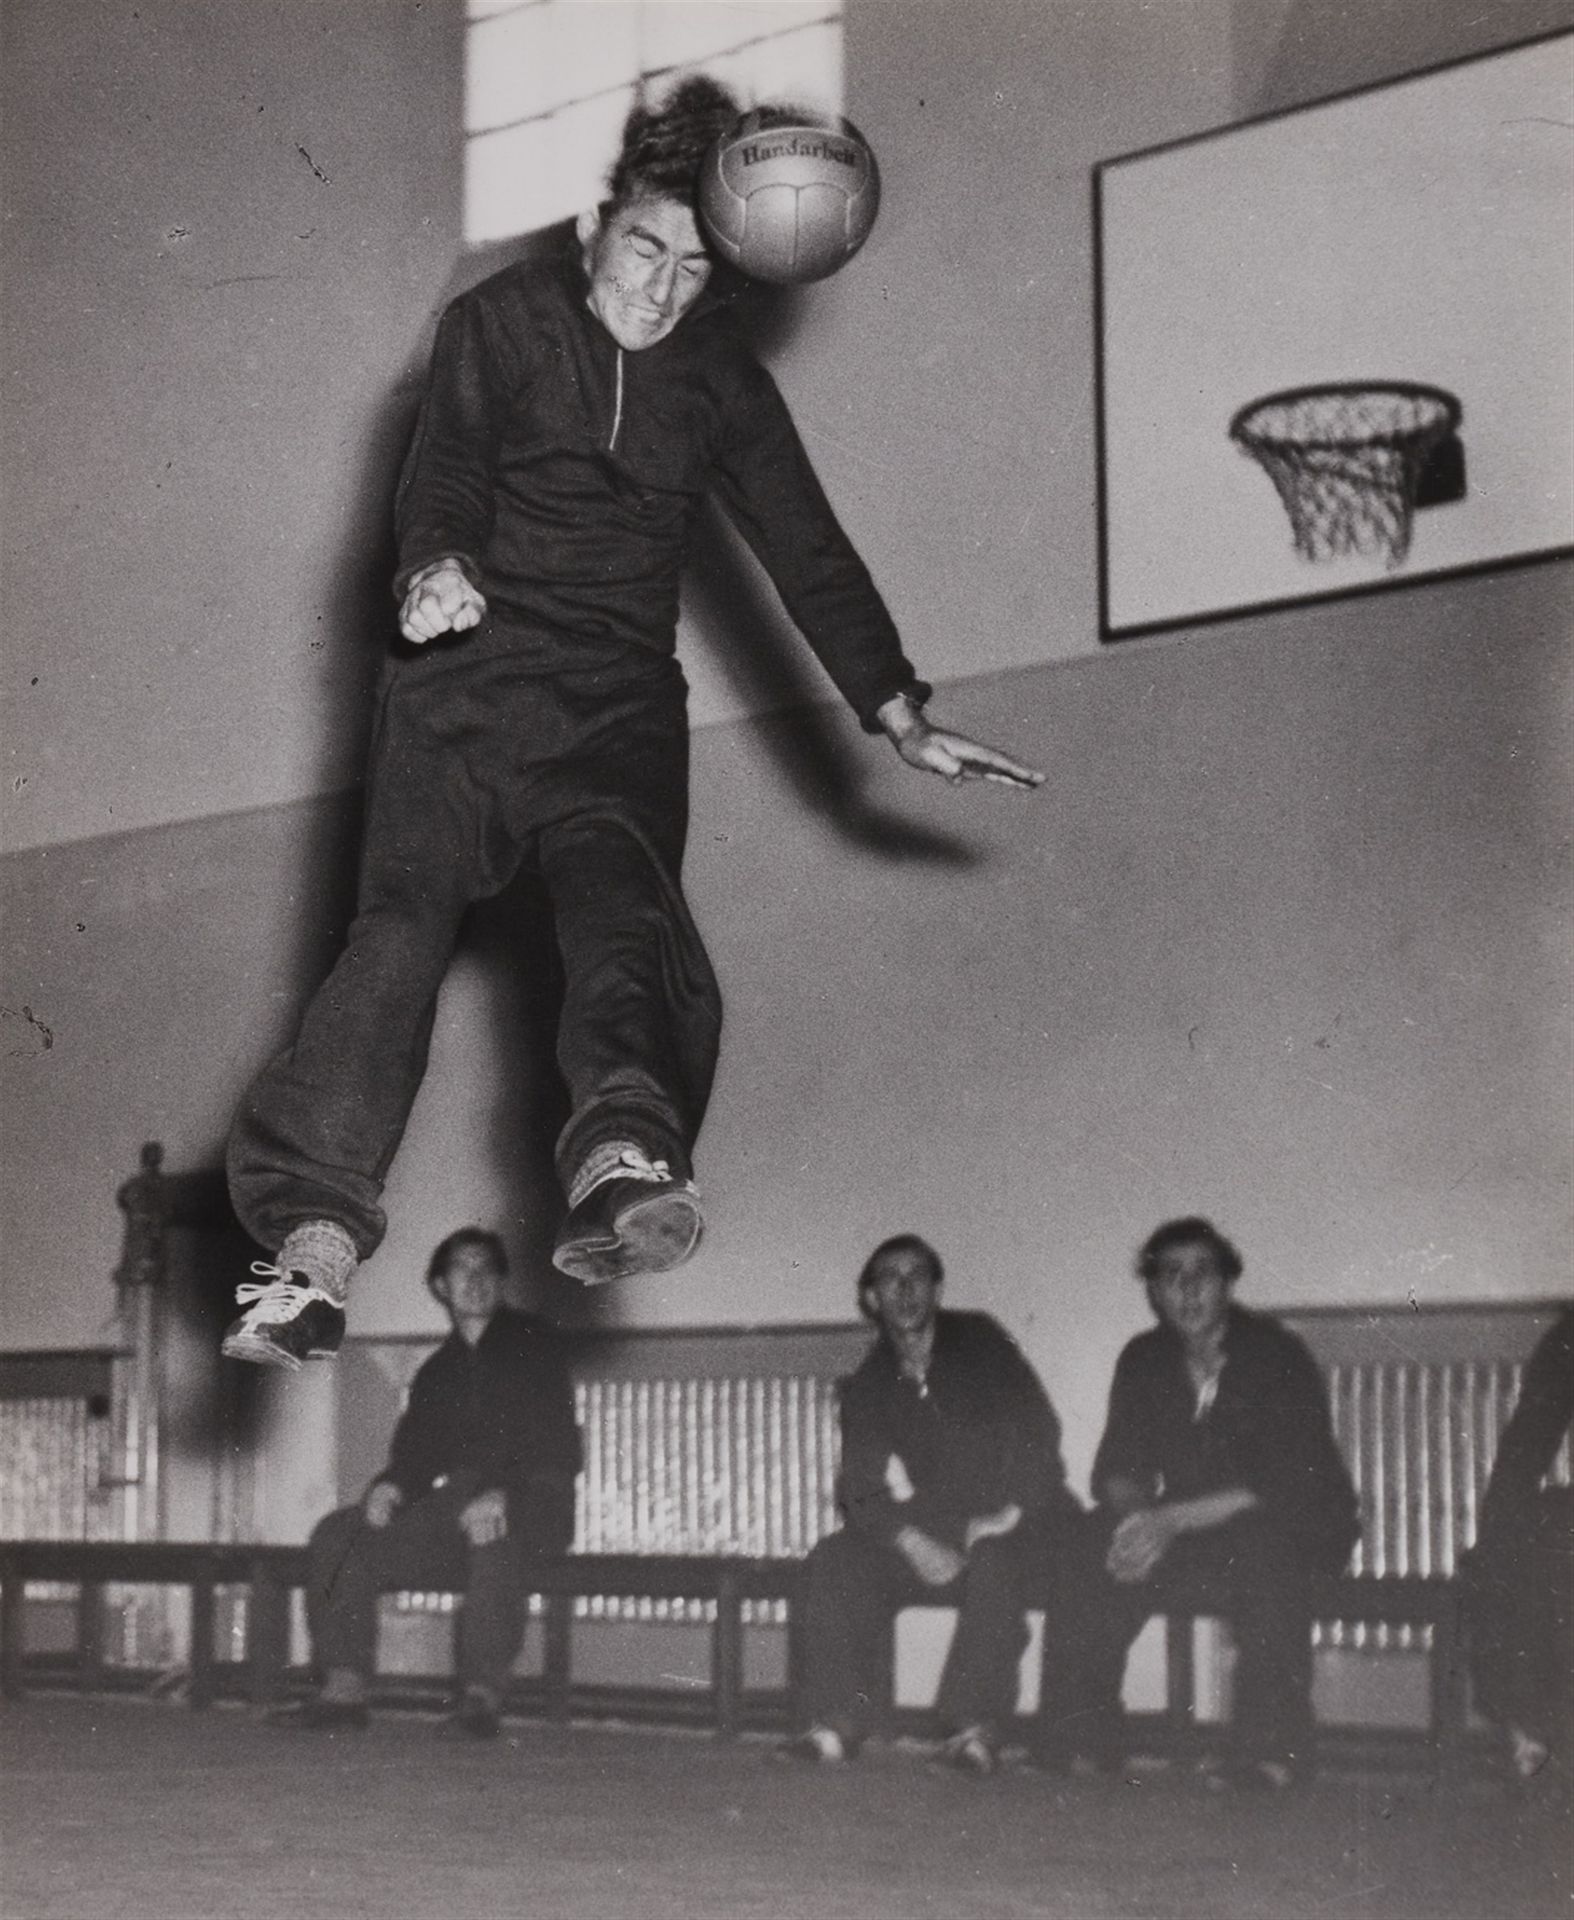 Hannes Kilian 汉内斯-基里安



弗里茨-沃尔特在练习头球

1949



复古，明胶银打印高光。27.2 x 22.2厘米。背面有摄影师的版&hellip;